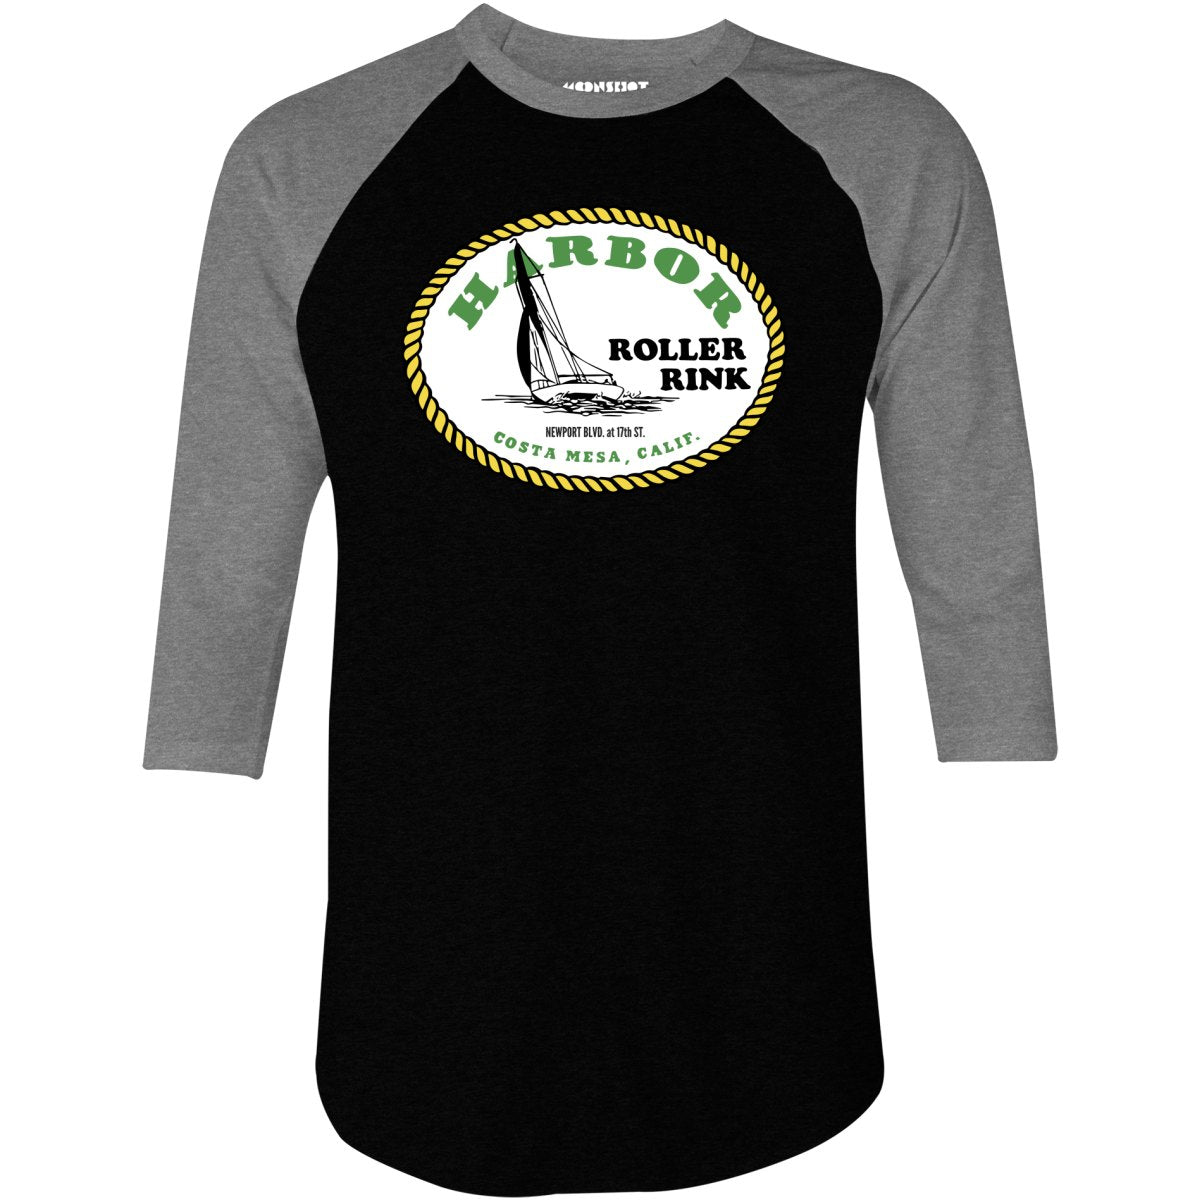 Harbor Roller Rink - Costa Mesa, CA - Vintage Roller Rink - 3/4 Sleeve Raglan T-Shirt